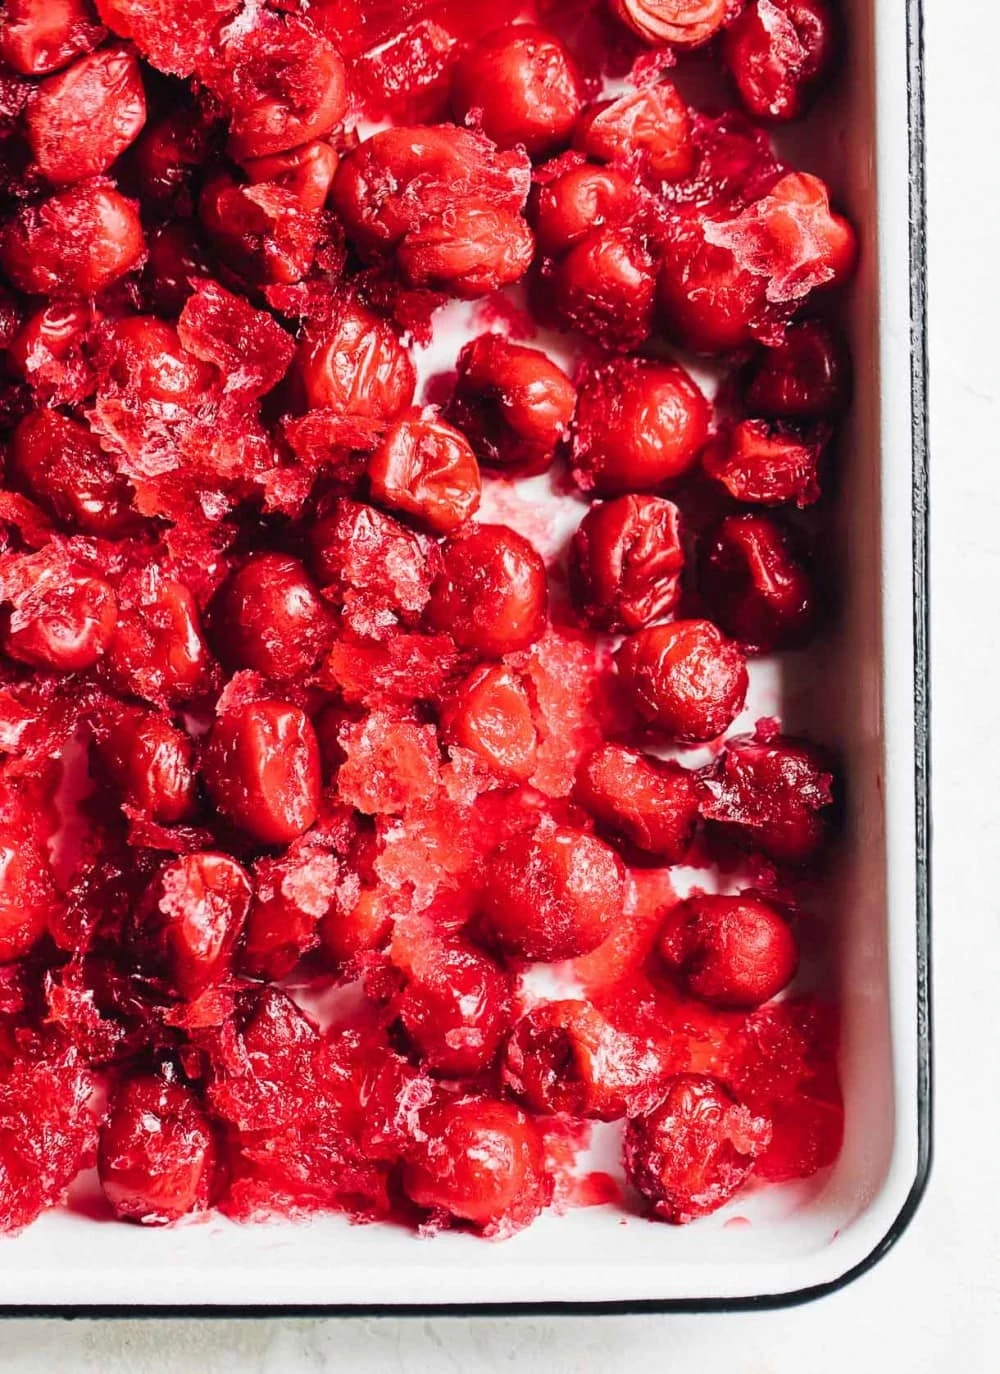 frozen tart cherries in a white enamel pan